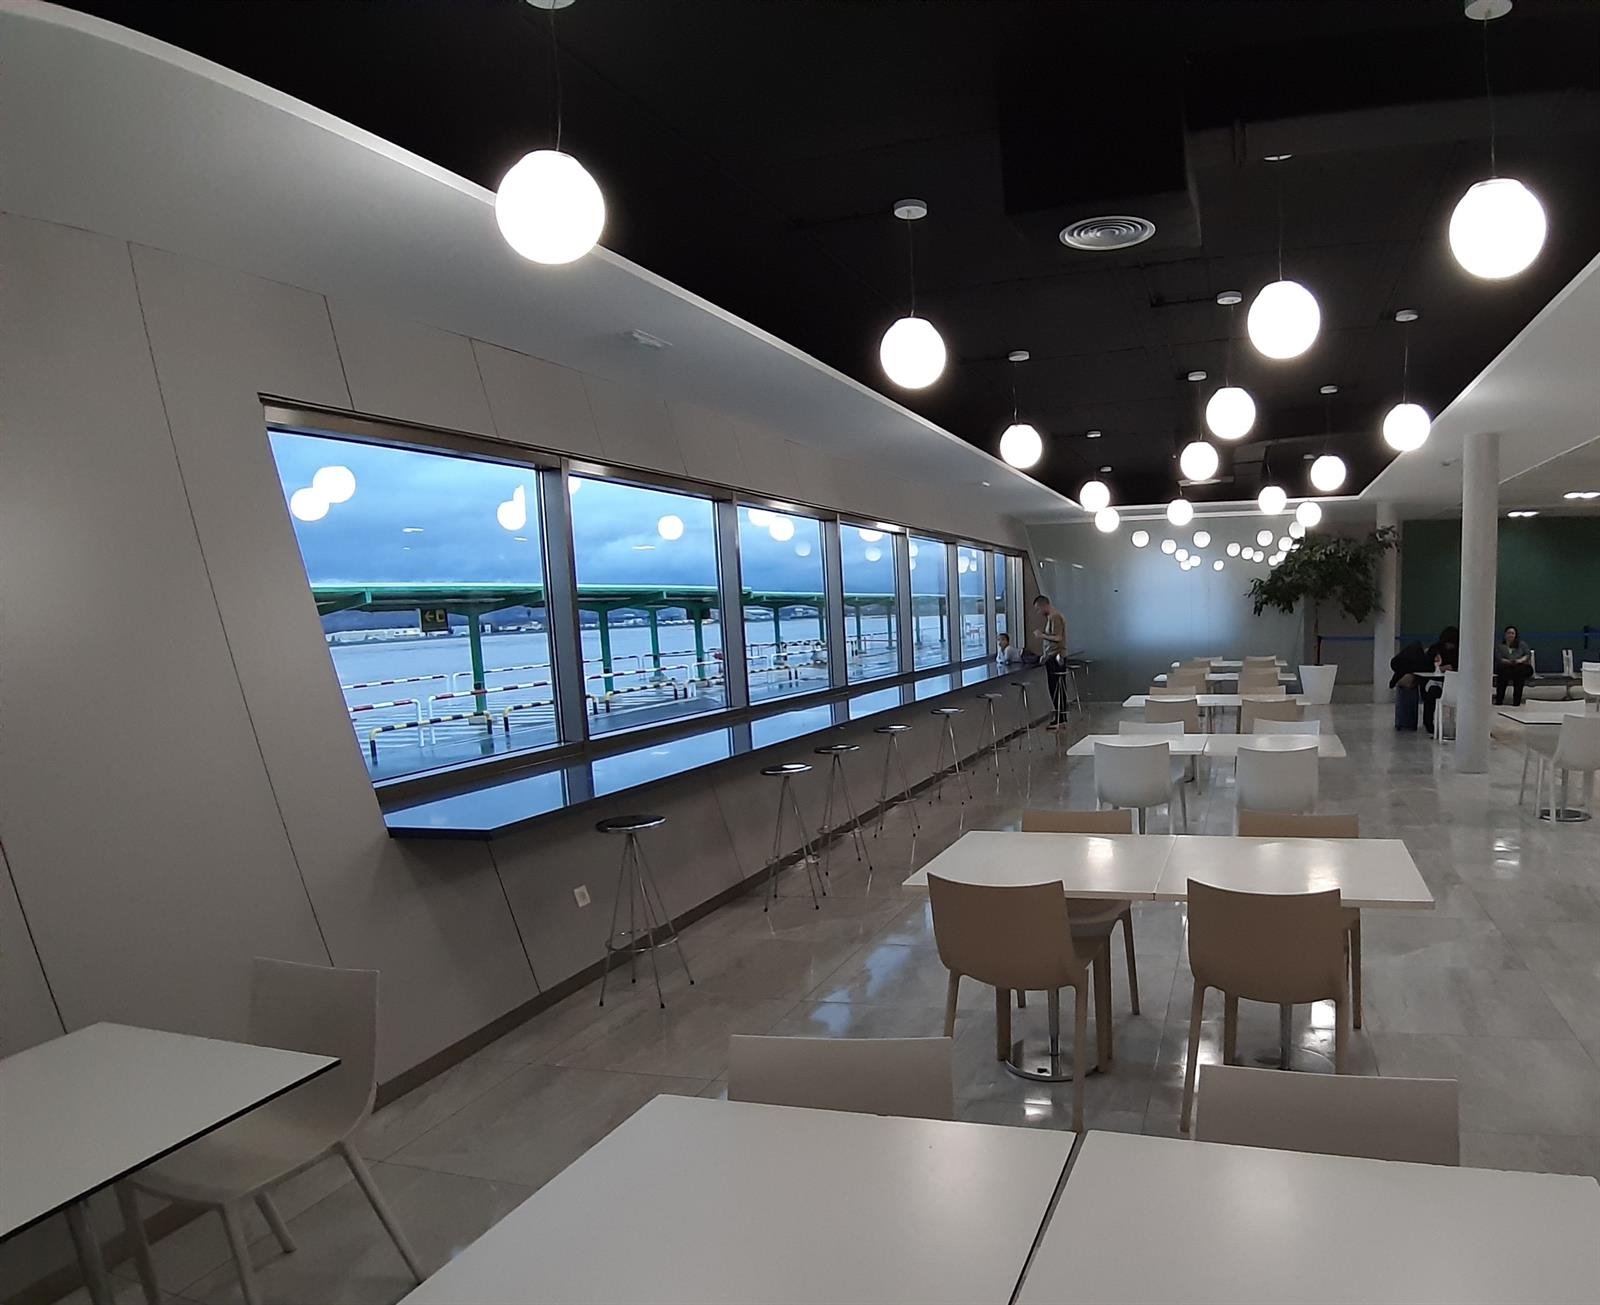 El Aeropuerto Federico García Lorca reforma su zona de embarque y abre una sala de lactancia